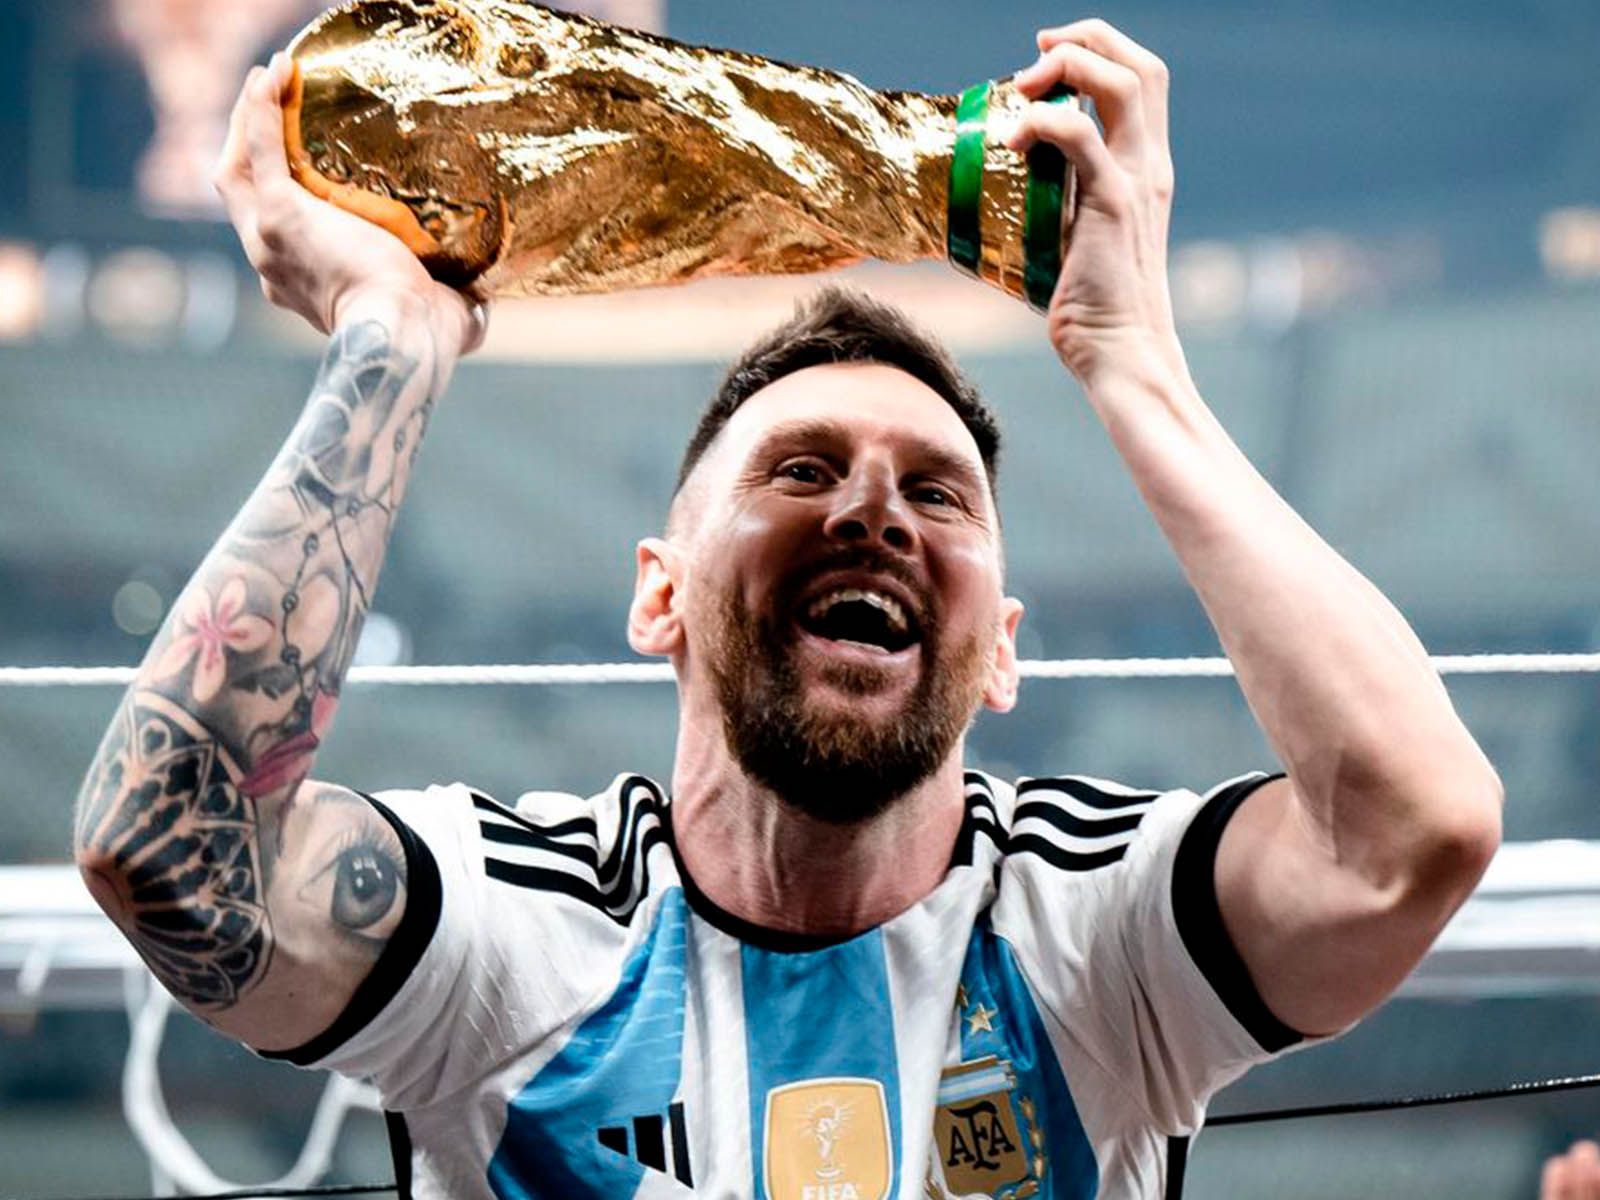 La foto de Messi supera en ‘likes’ a la del huevo en Instagram